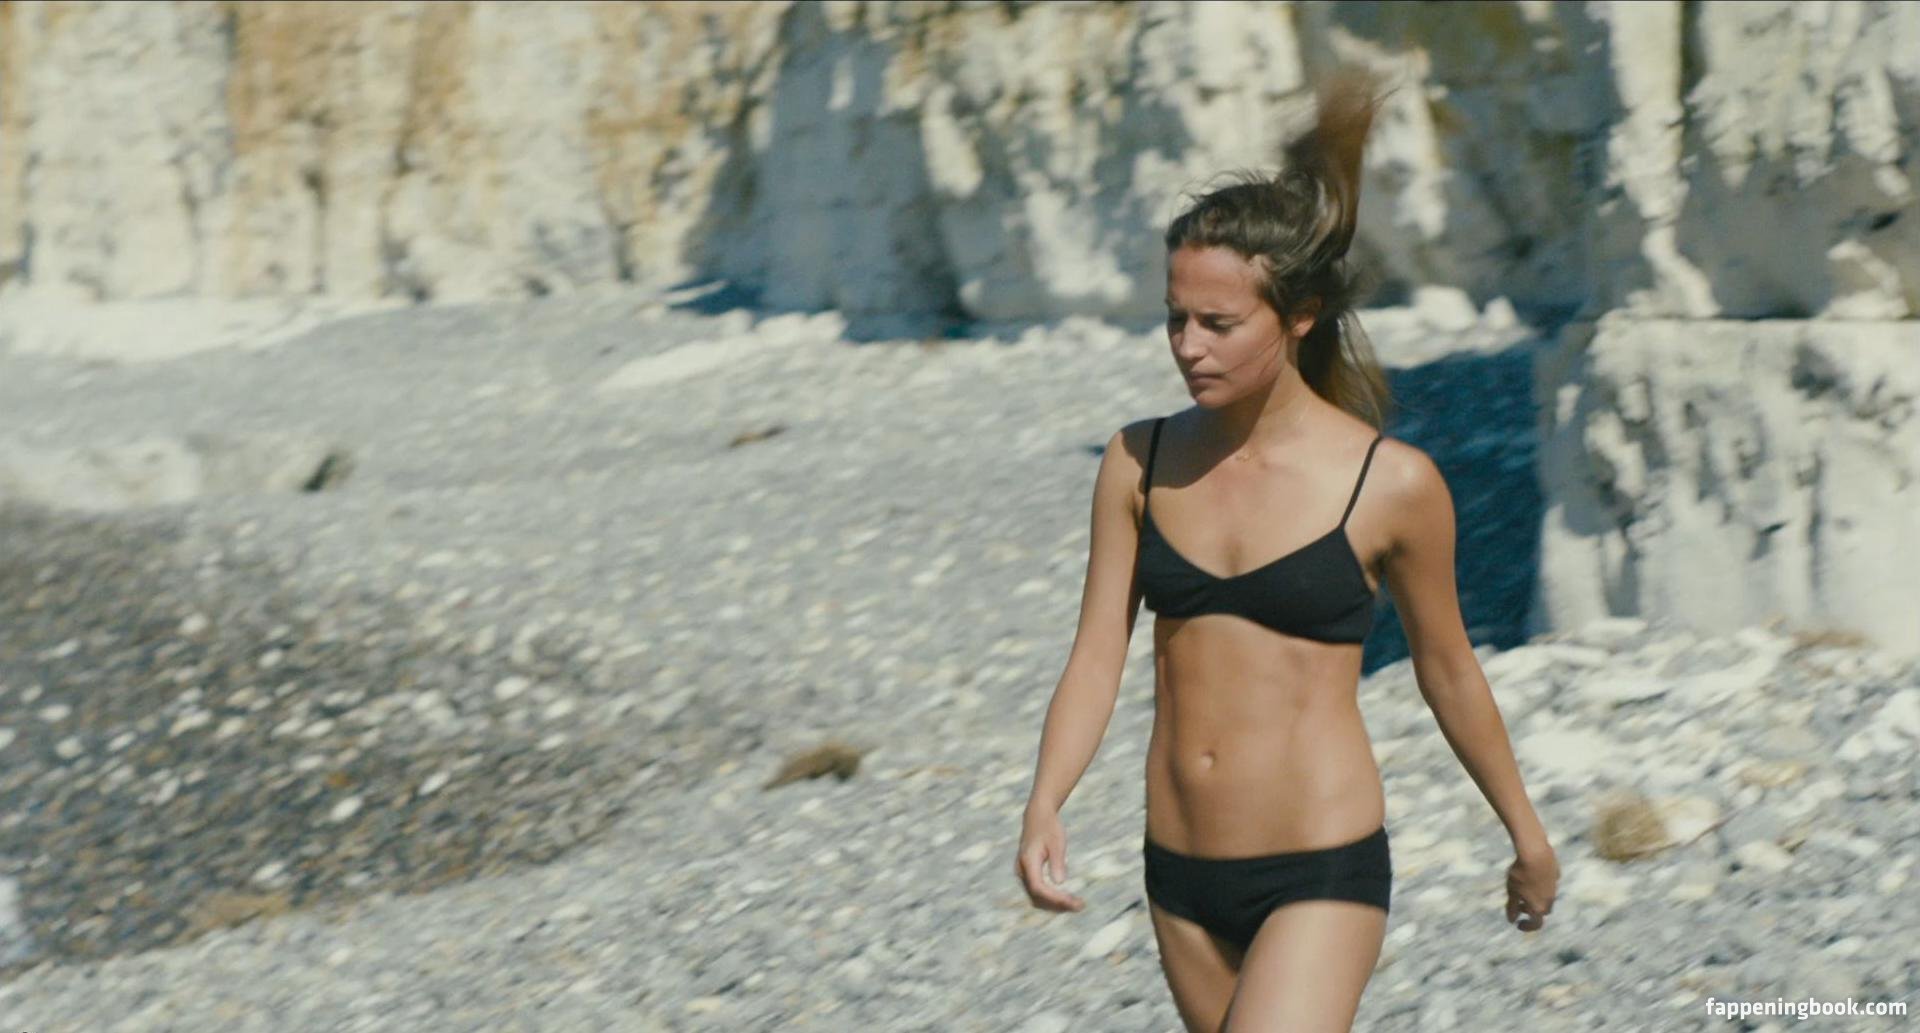 Алисия Викандер, облаченная в бодрый пляжный образ, — воплощение женской грации